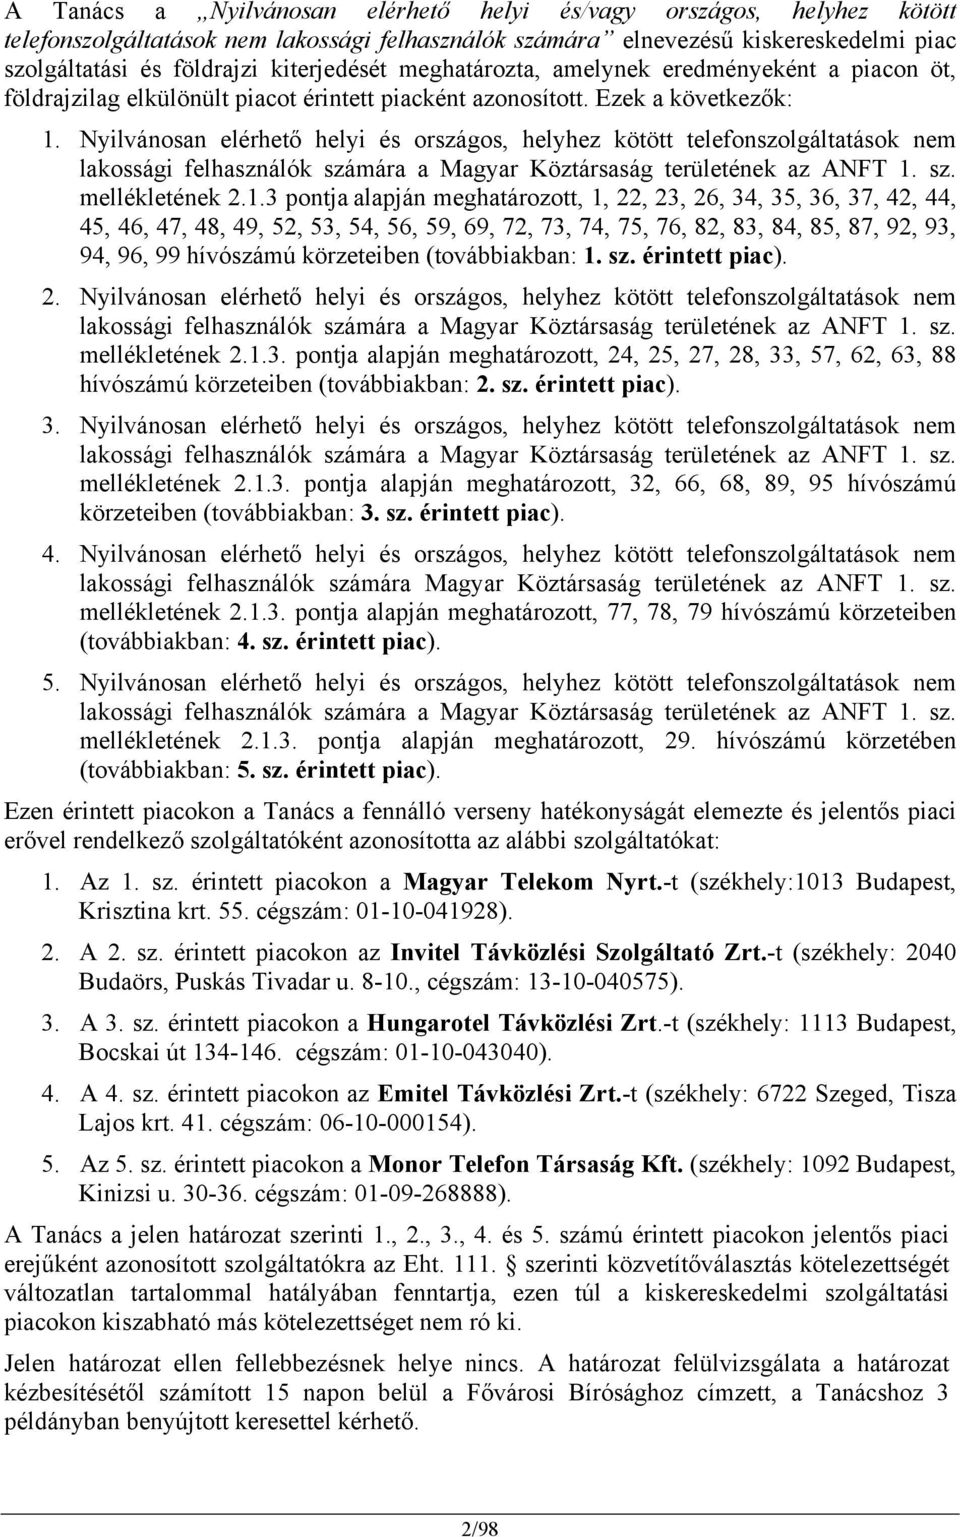 Nyilvánosan elérhető helyi és országos, helyhez kötött telefonszolgáltatások nem lakossági felhasználók számára a Magyar Köztársaság területének az ANFT 1.